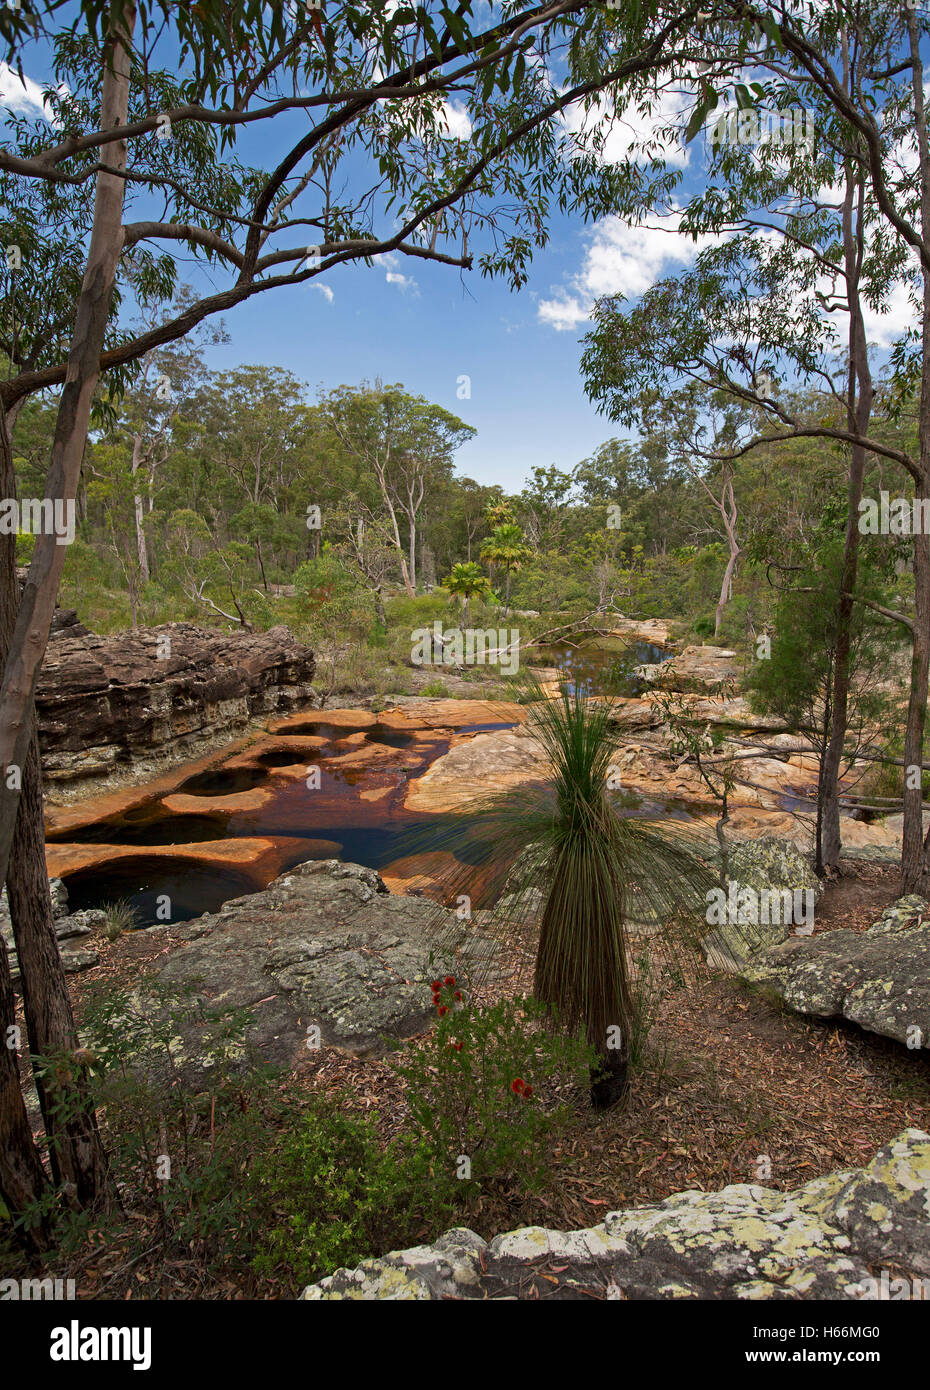 Aust Landschaft, geprägt von erodierten Platten aus rotem Sandsteinfelsen & Wasser der ruhigen Bach grenzt an Eukalyptus Wald & Felsbrocken Stockfoto